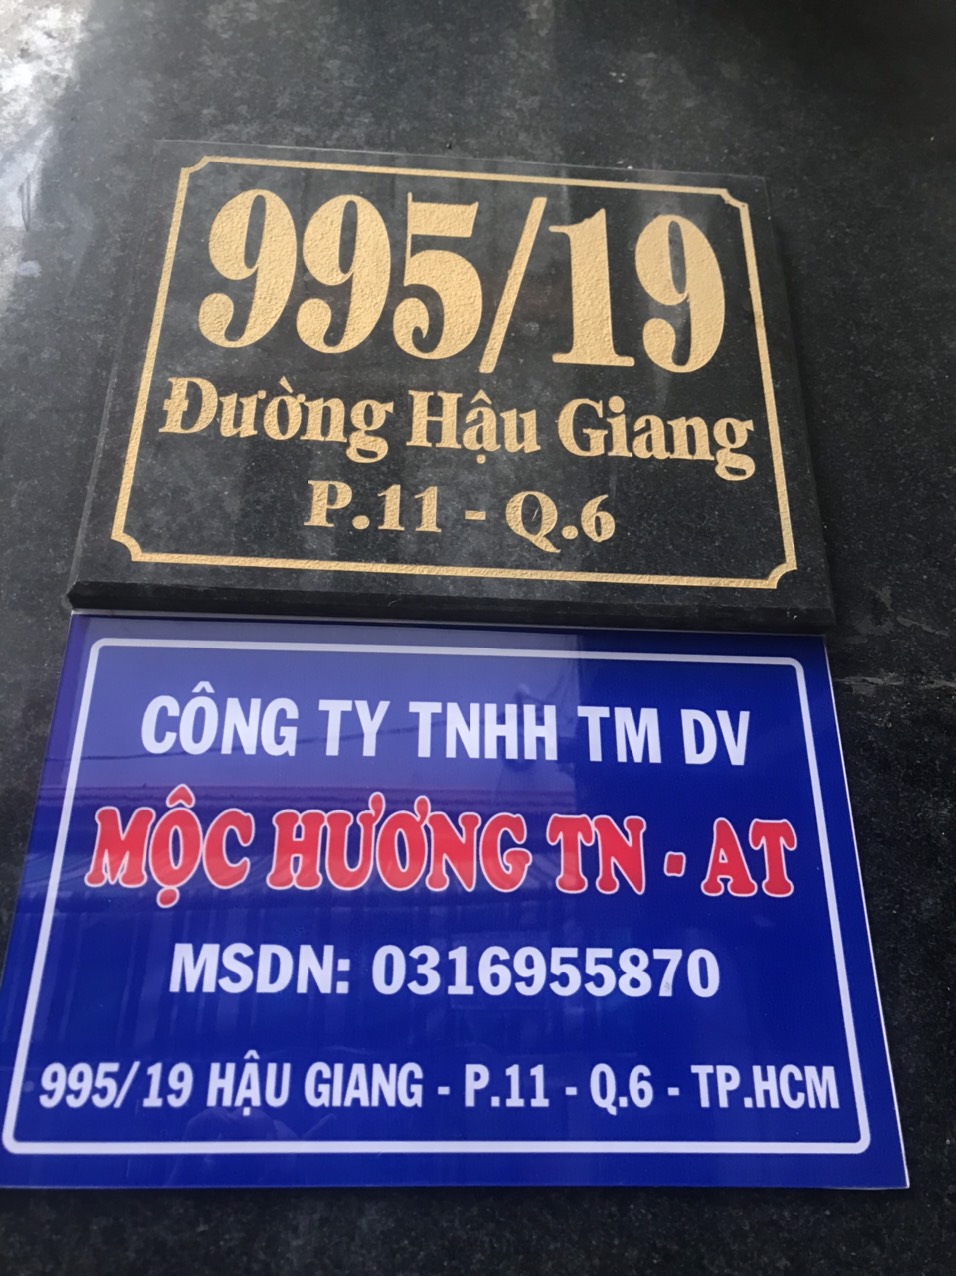 MOC HUONG TN - AT SERVICE TRADING COMPANY LIMITED